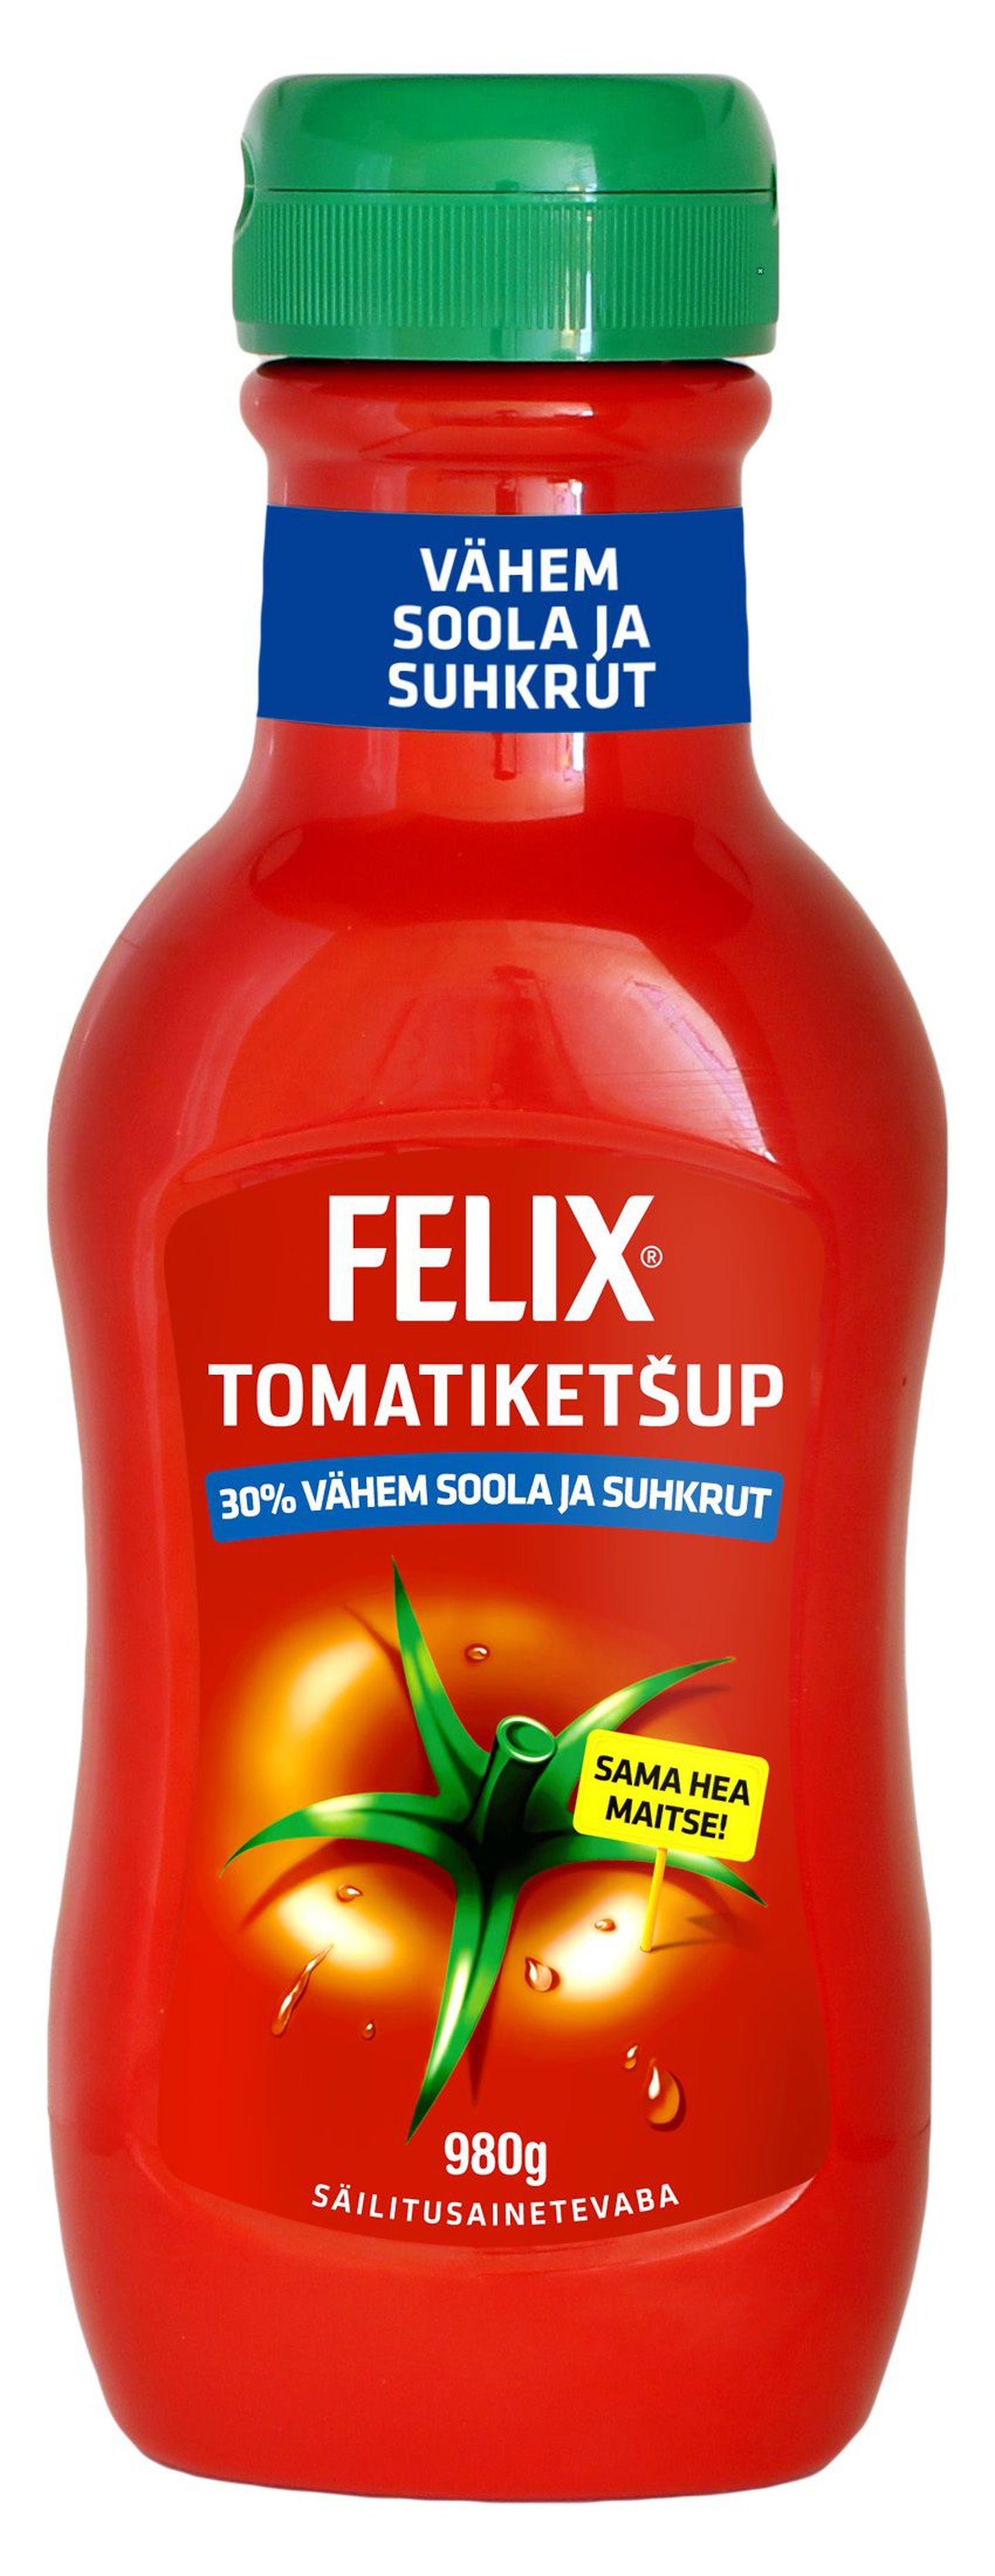 Felixi uus ketšupis on tavapärasest vähem suhkrut ja soola.